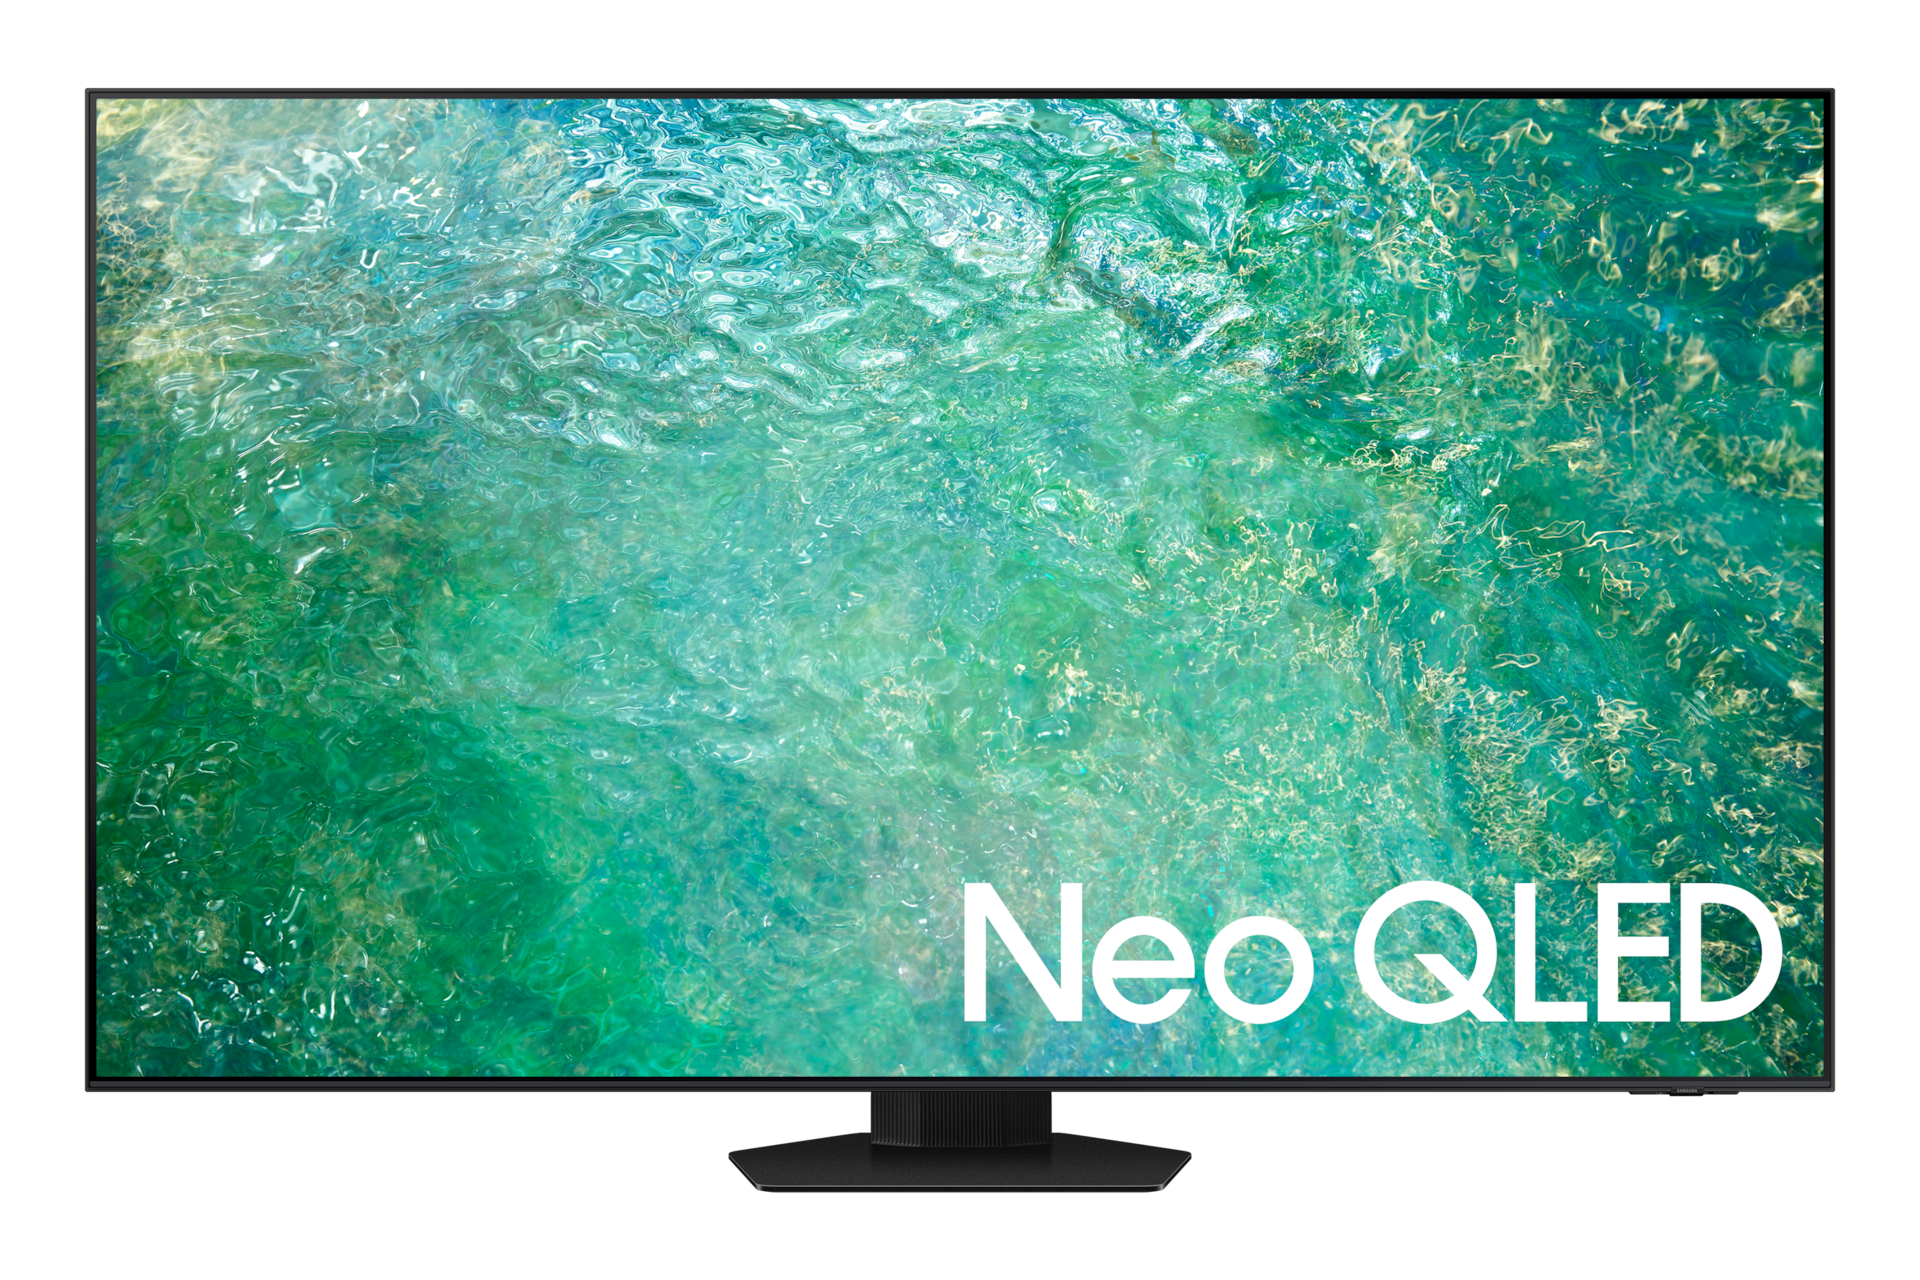 Televisor Samsung 85 pulgadas QLED 4K Ultra HD Smart TV QN85QN85 SAMSUNG